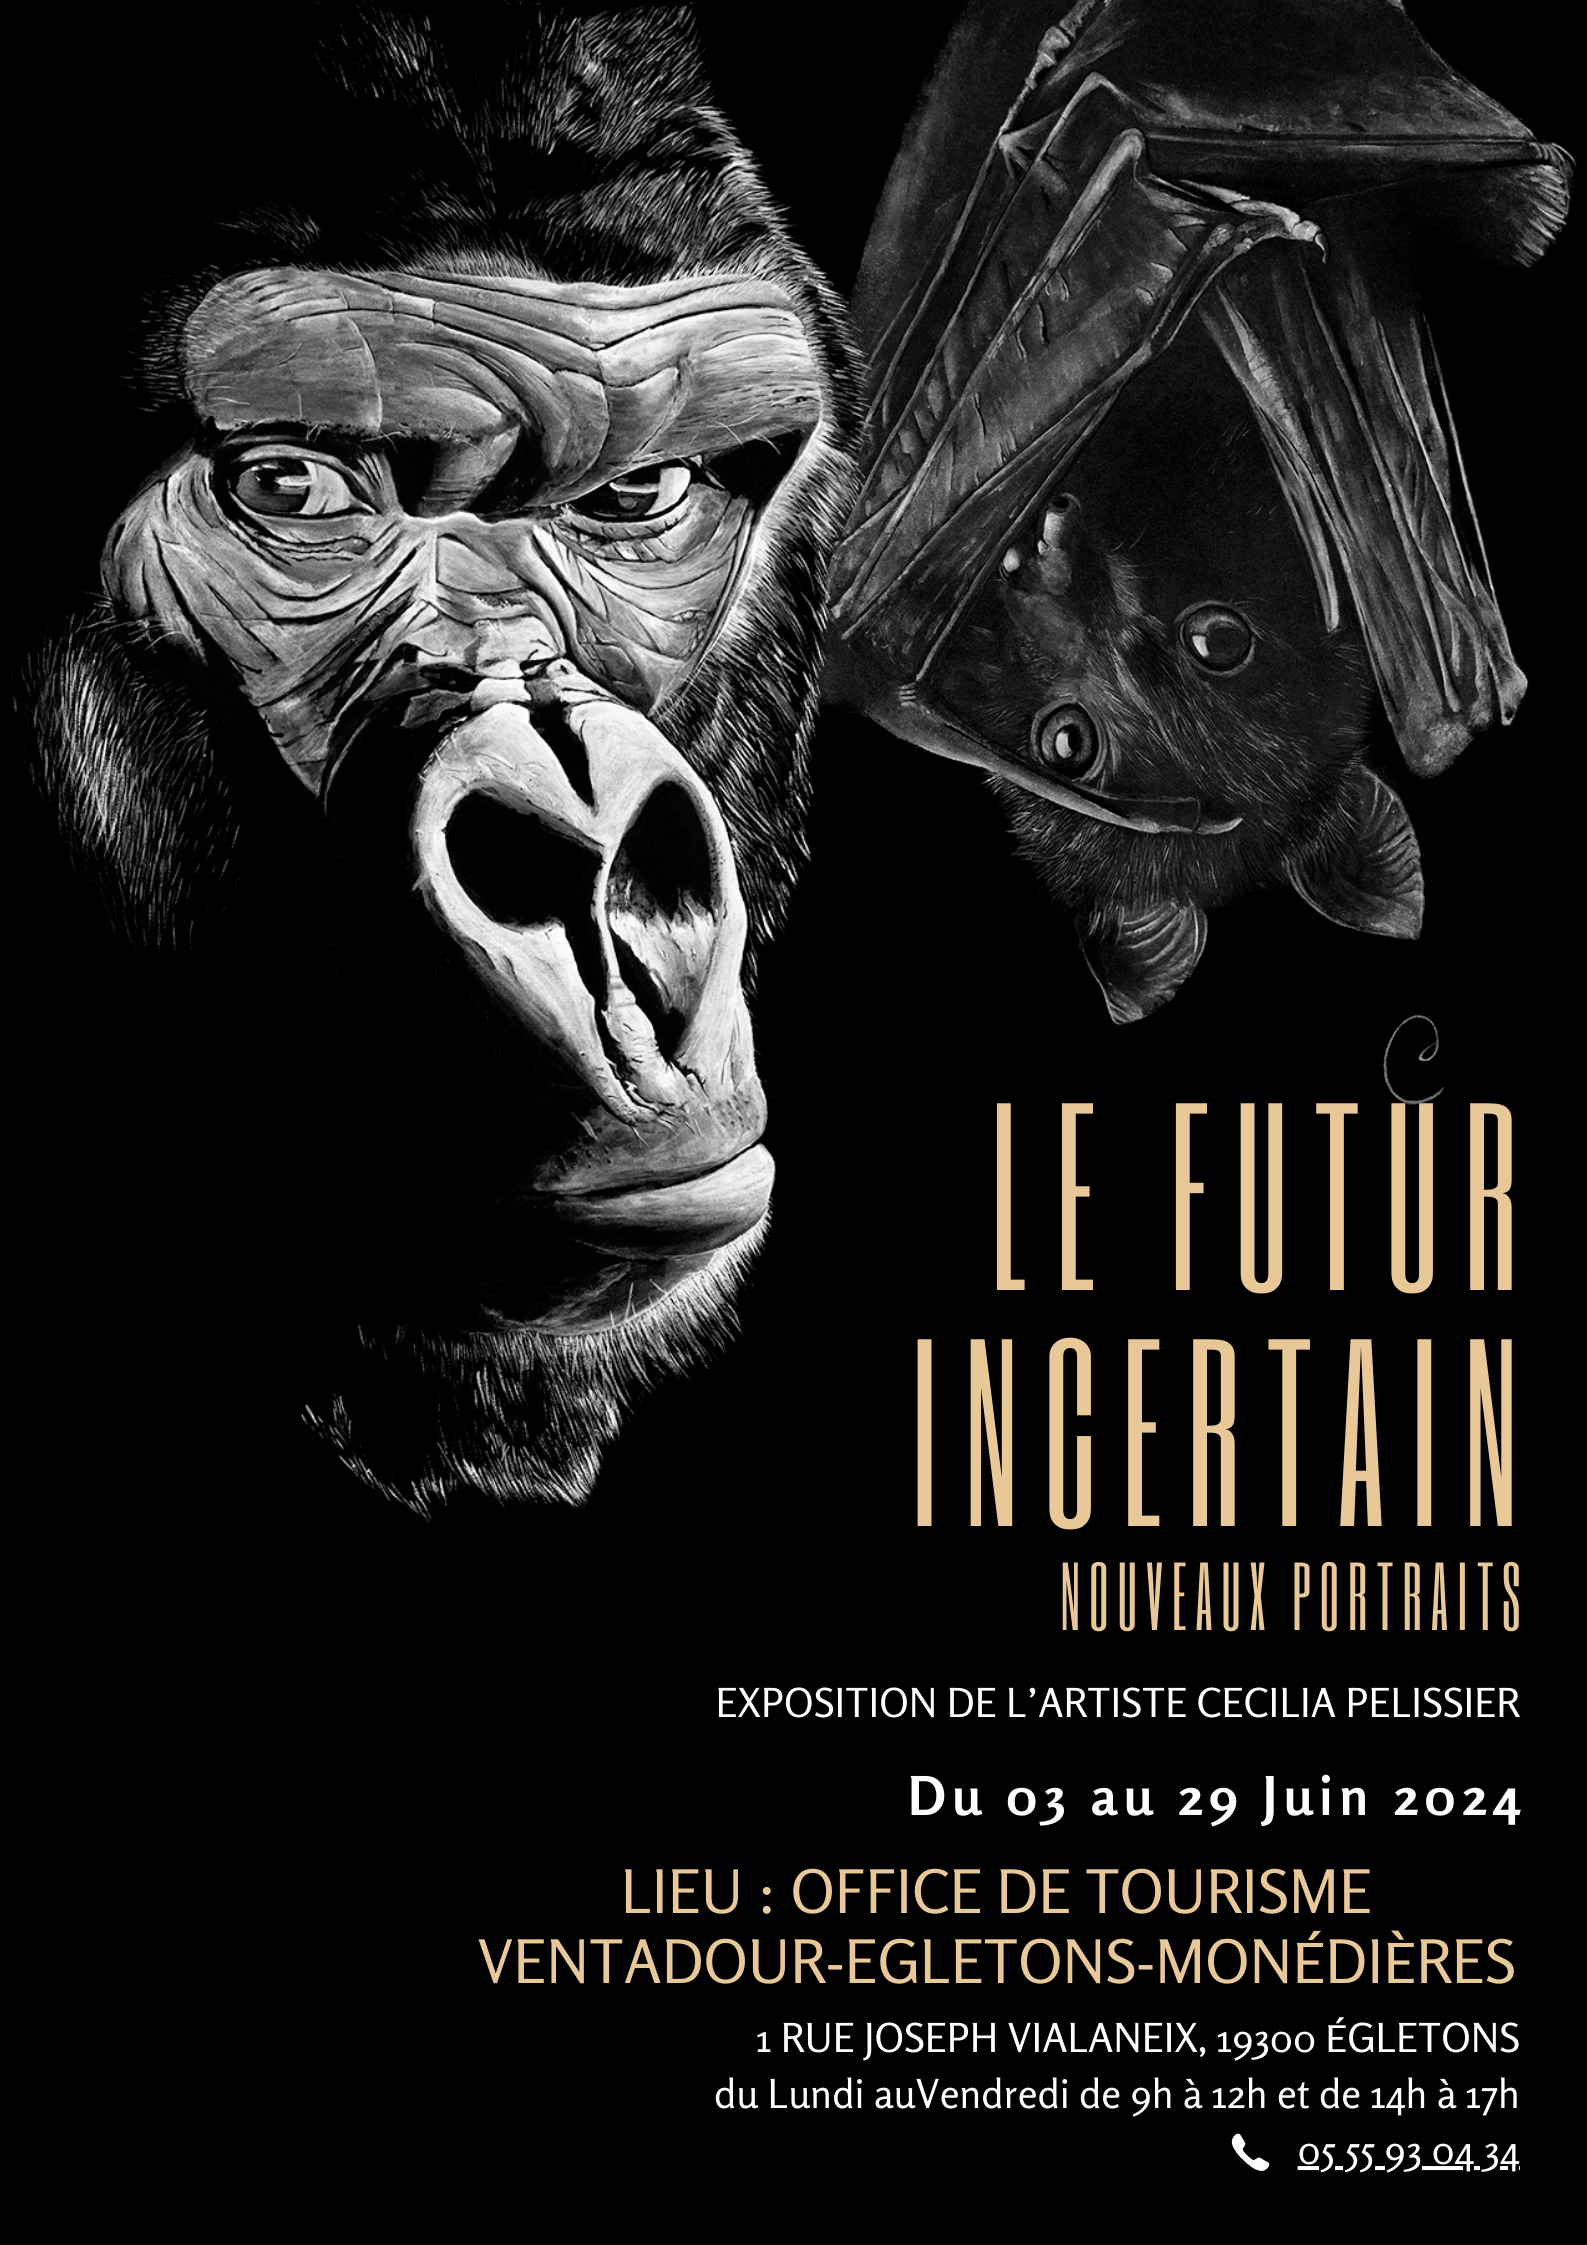 Exposition Cécilia Pélissier "Le futur incertain"